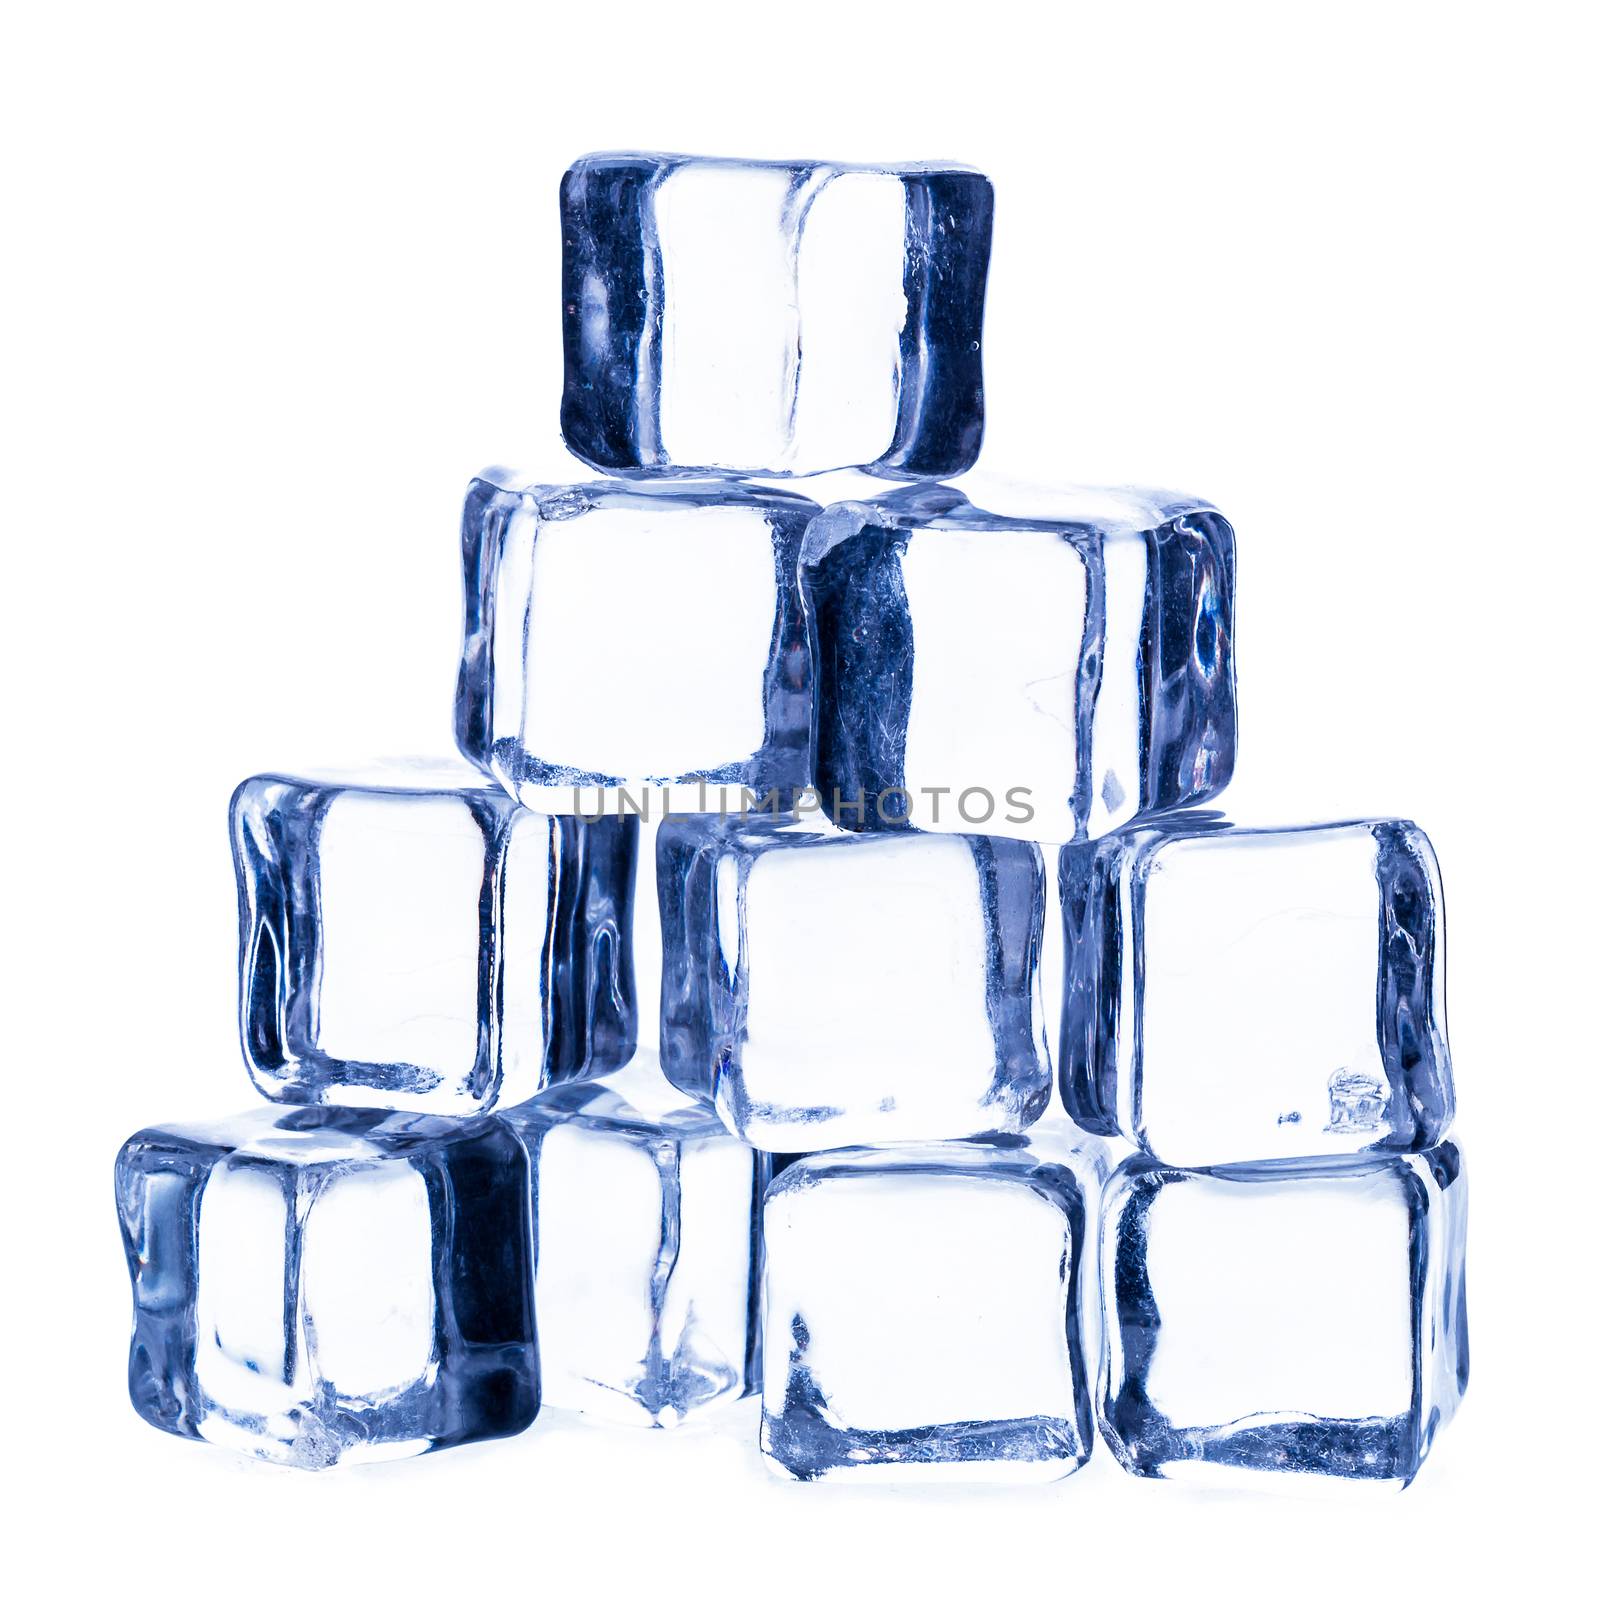 Melting ice cubes isolated on white background.